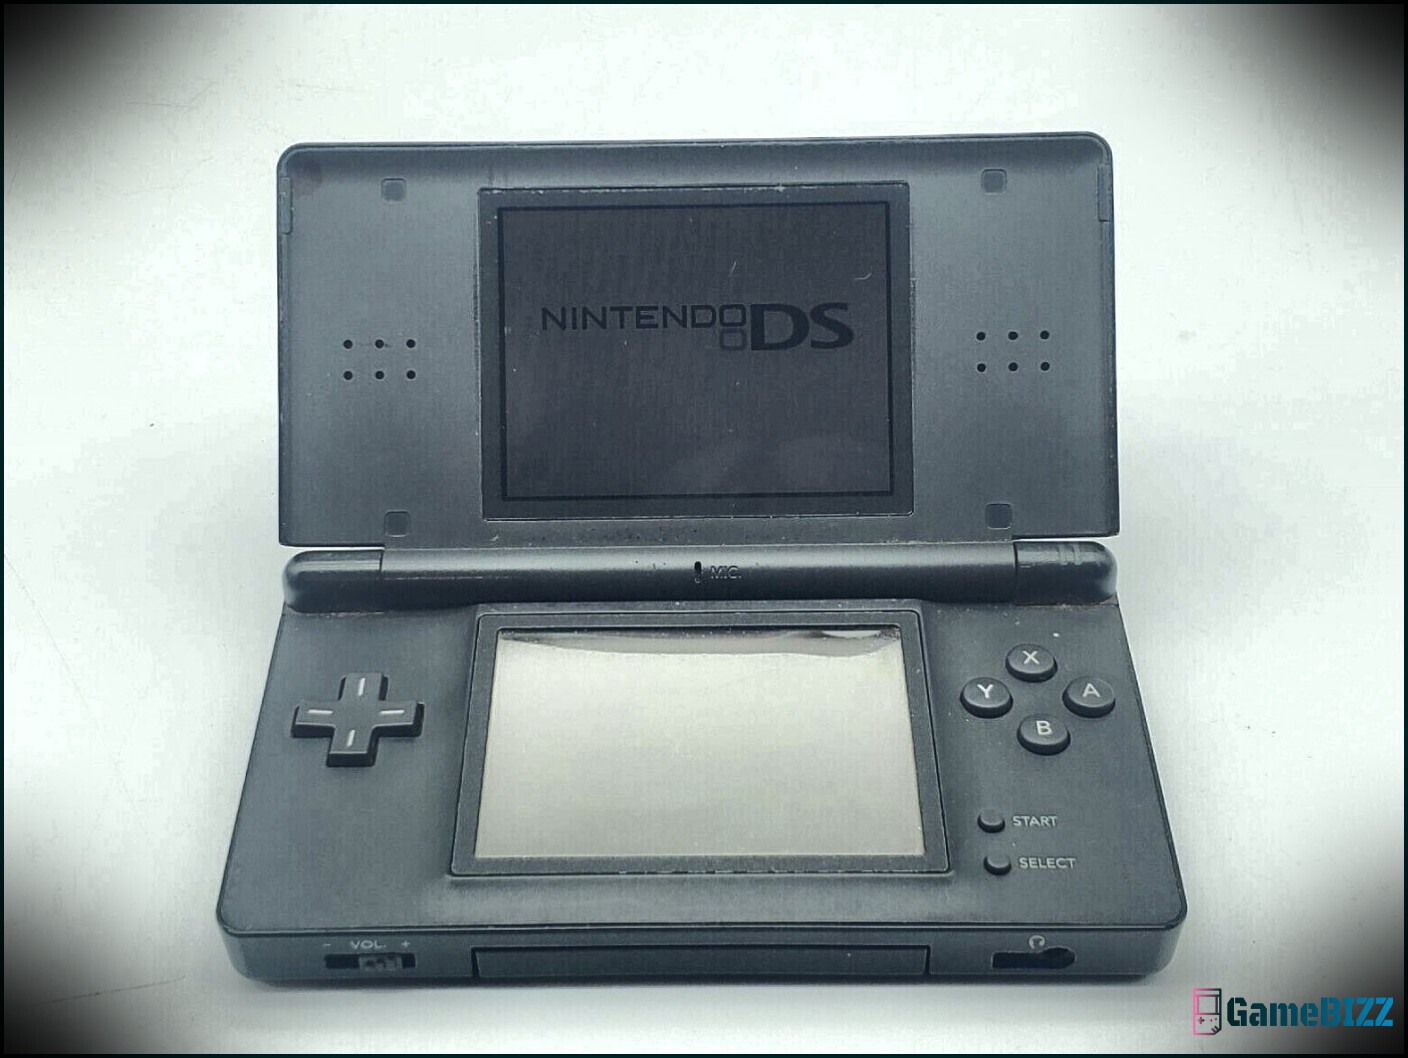 Moderne Konsolen könnten eine Menge vom Nintendo DS lernen